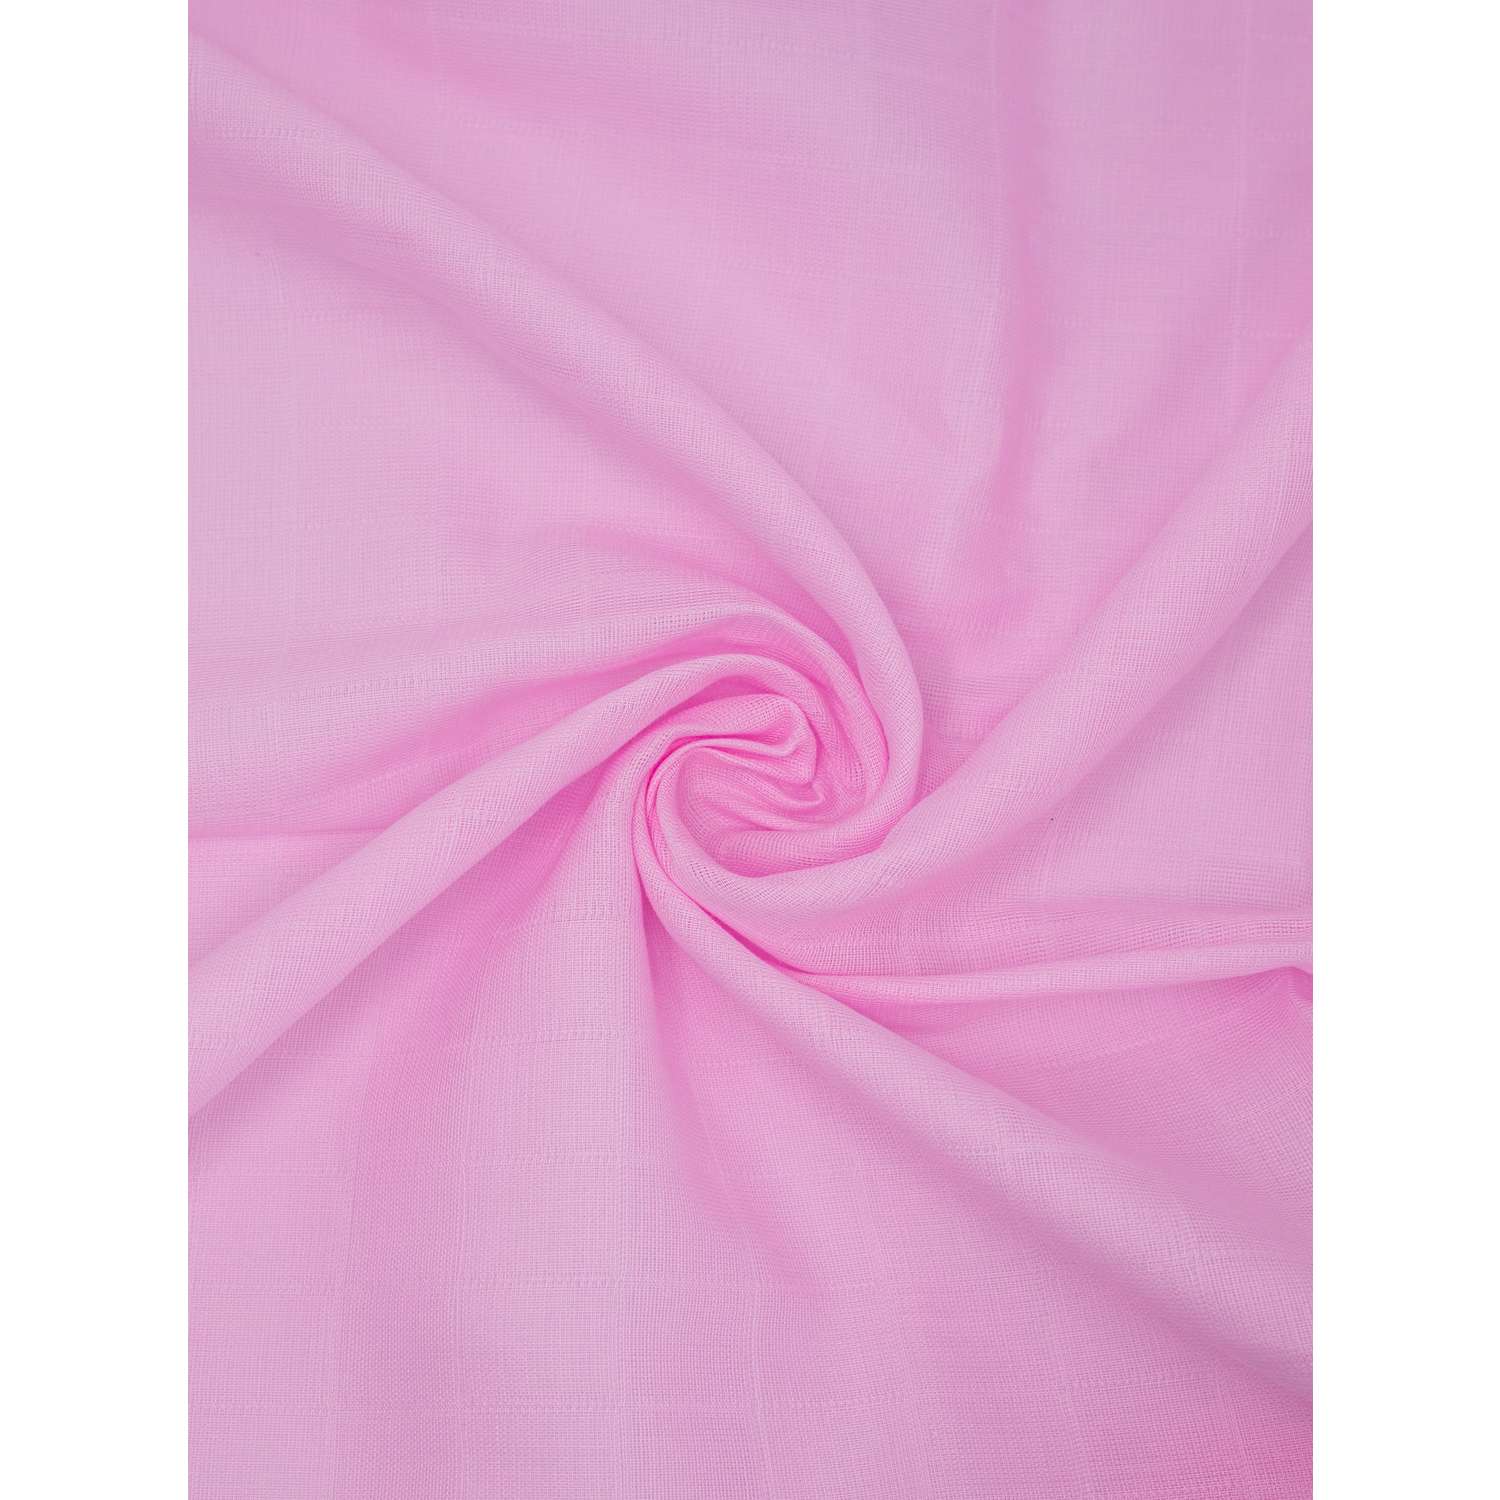 Муслиновые платочки Про Сон платочки муслин розовые - фото 4